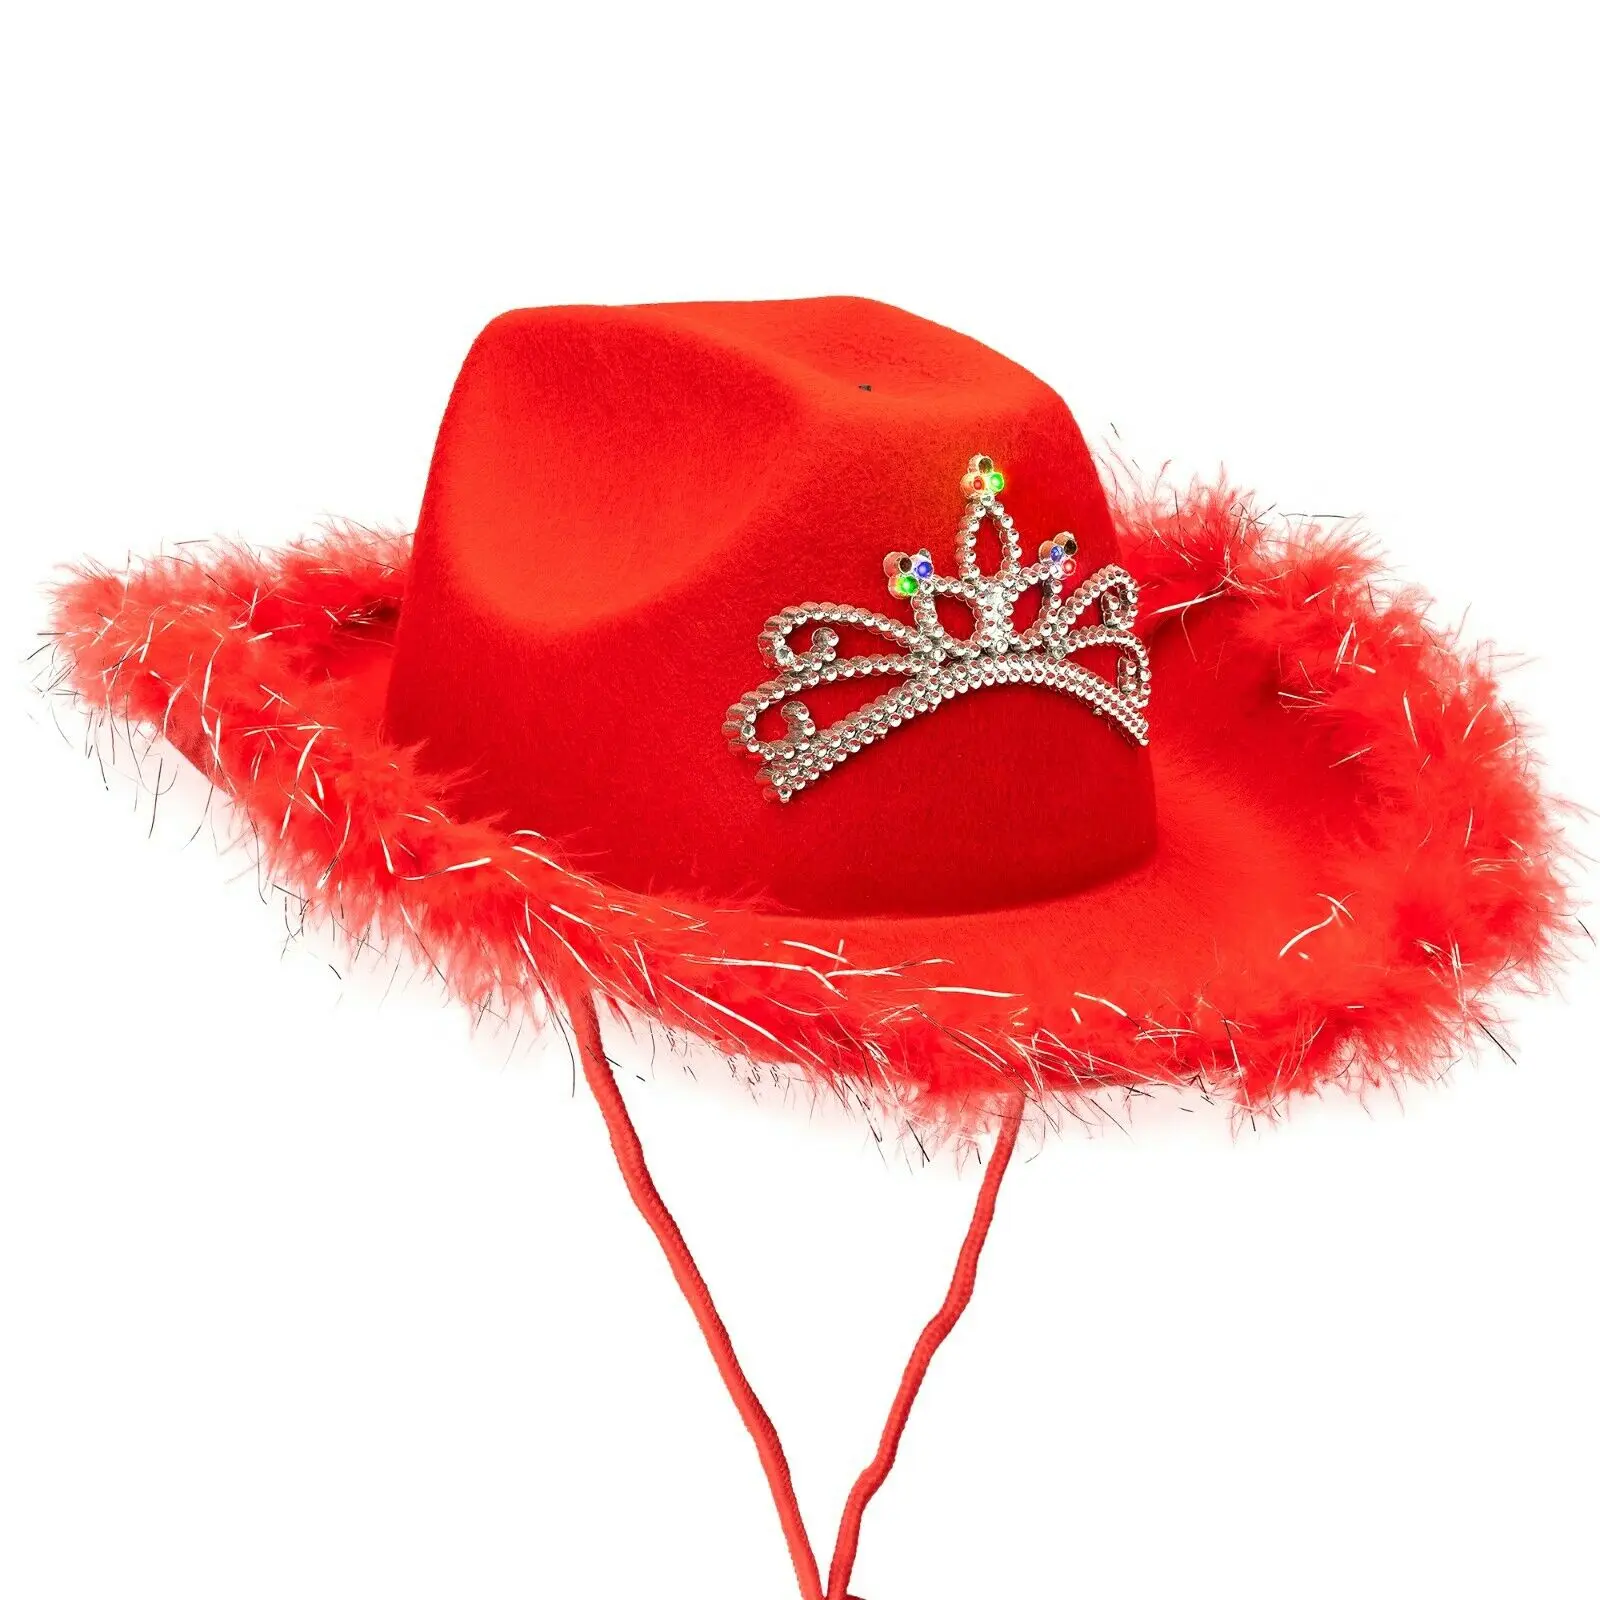 Ковбойская шляпа для взрослых с тиарой и перьями, шляпа Cowgirl с короной